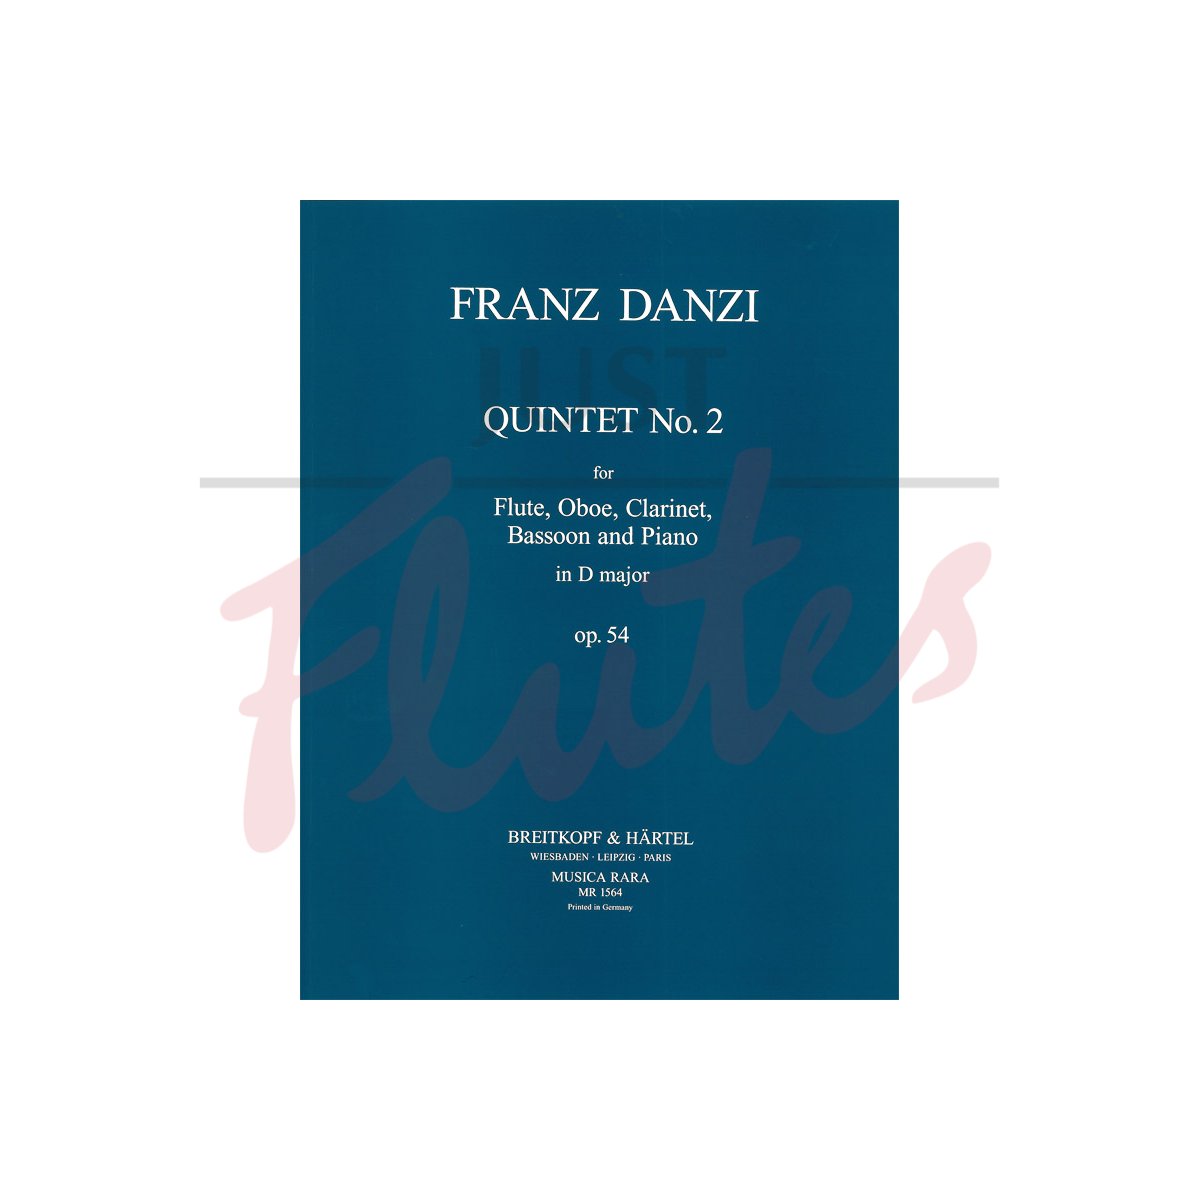 Quintet No 2 in D major